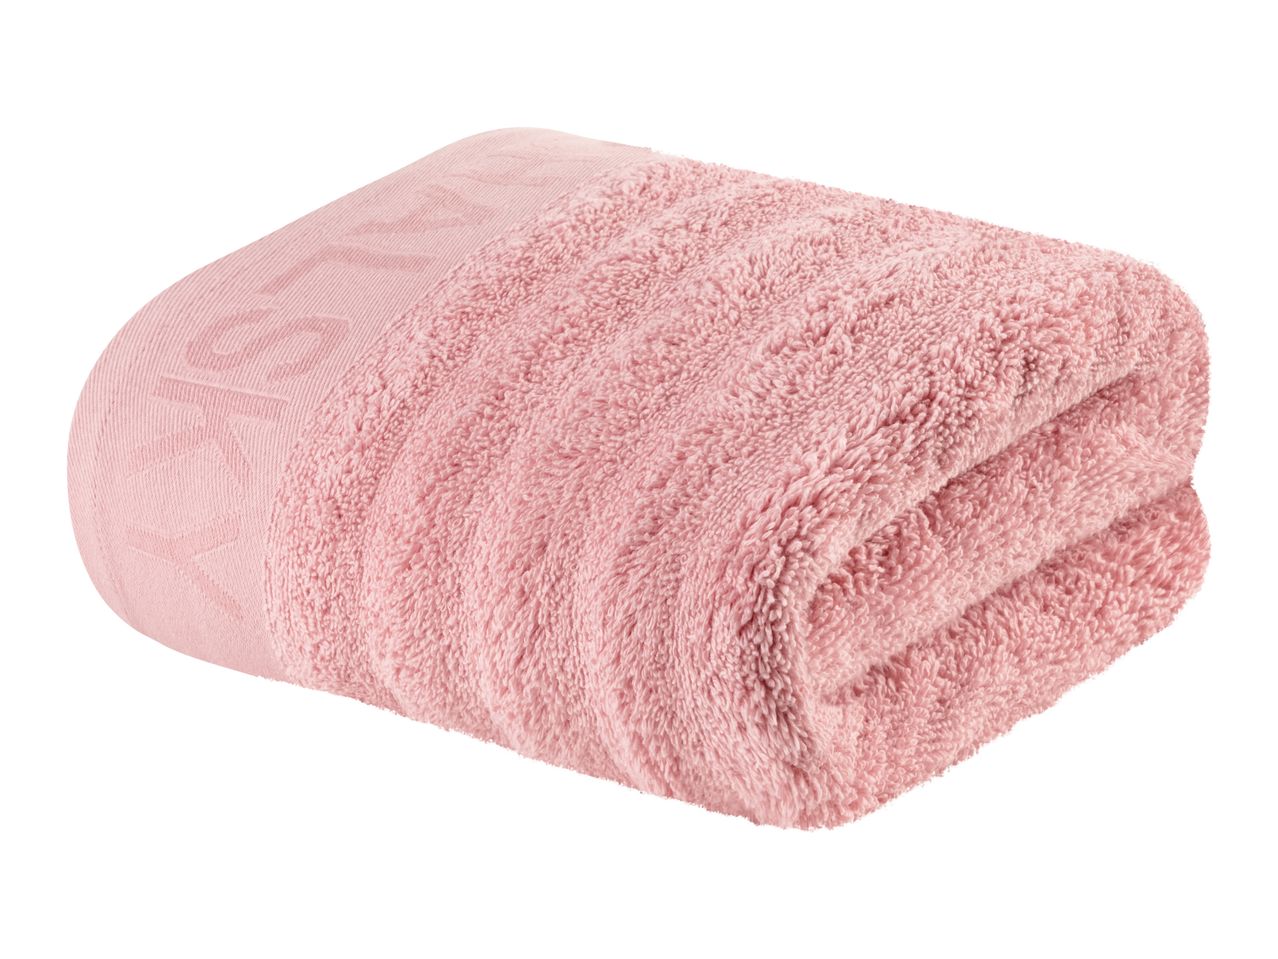 Asciugamano , prezzo 7.99 EUR  
Asciugamano  50 x 100 cm  
-  Puro cotone